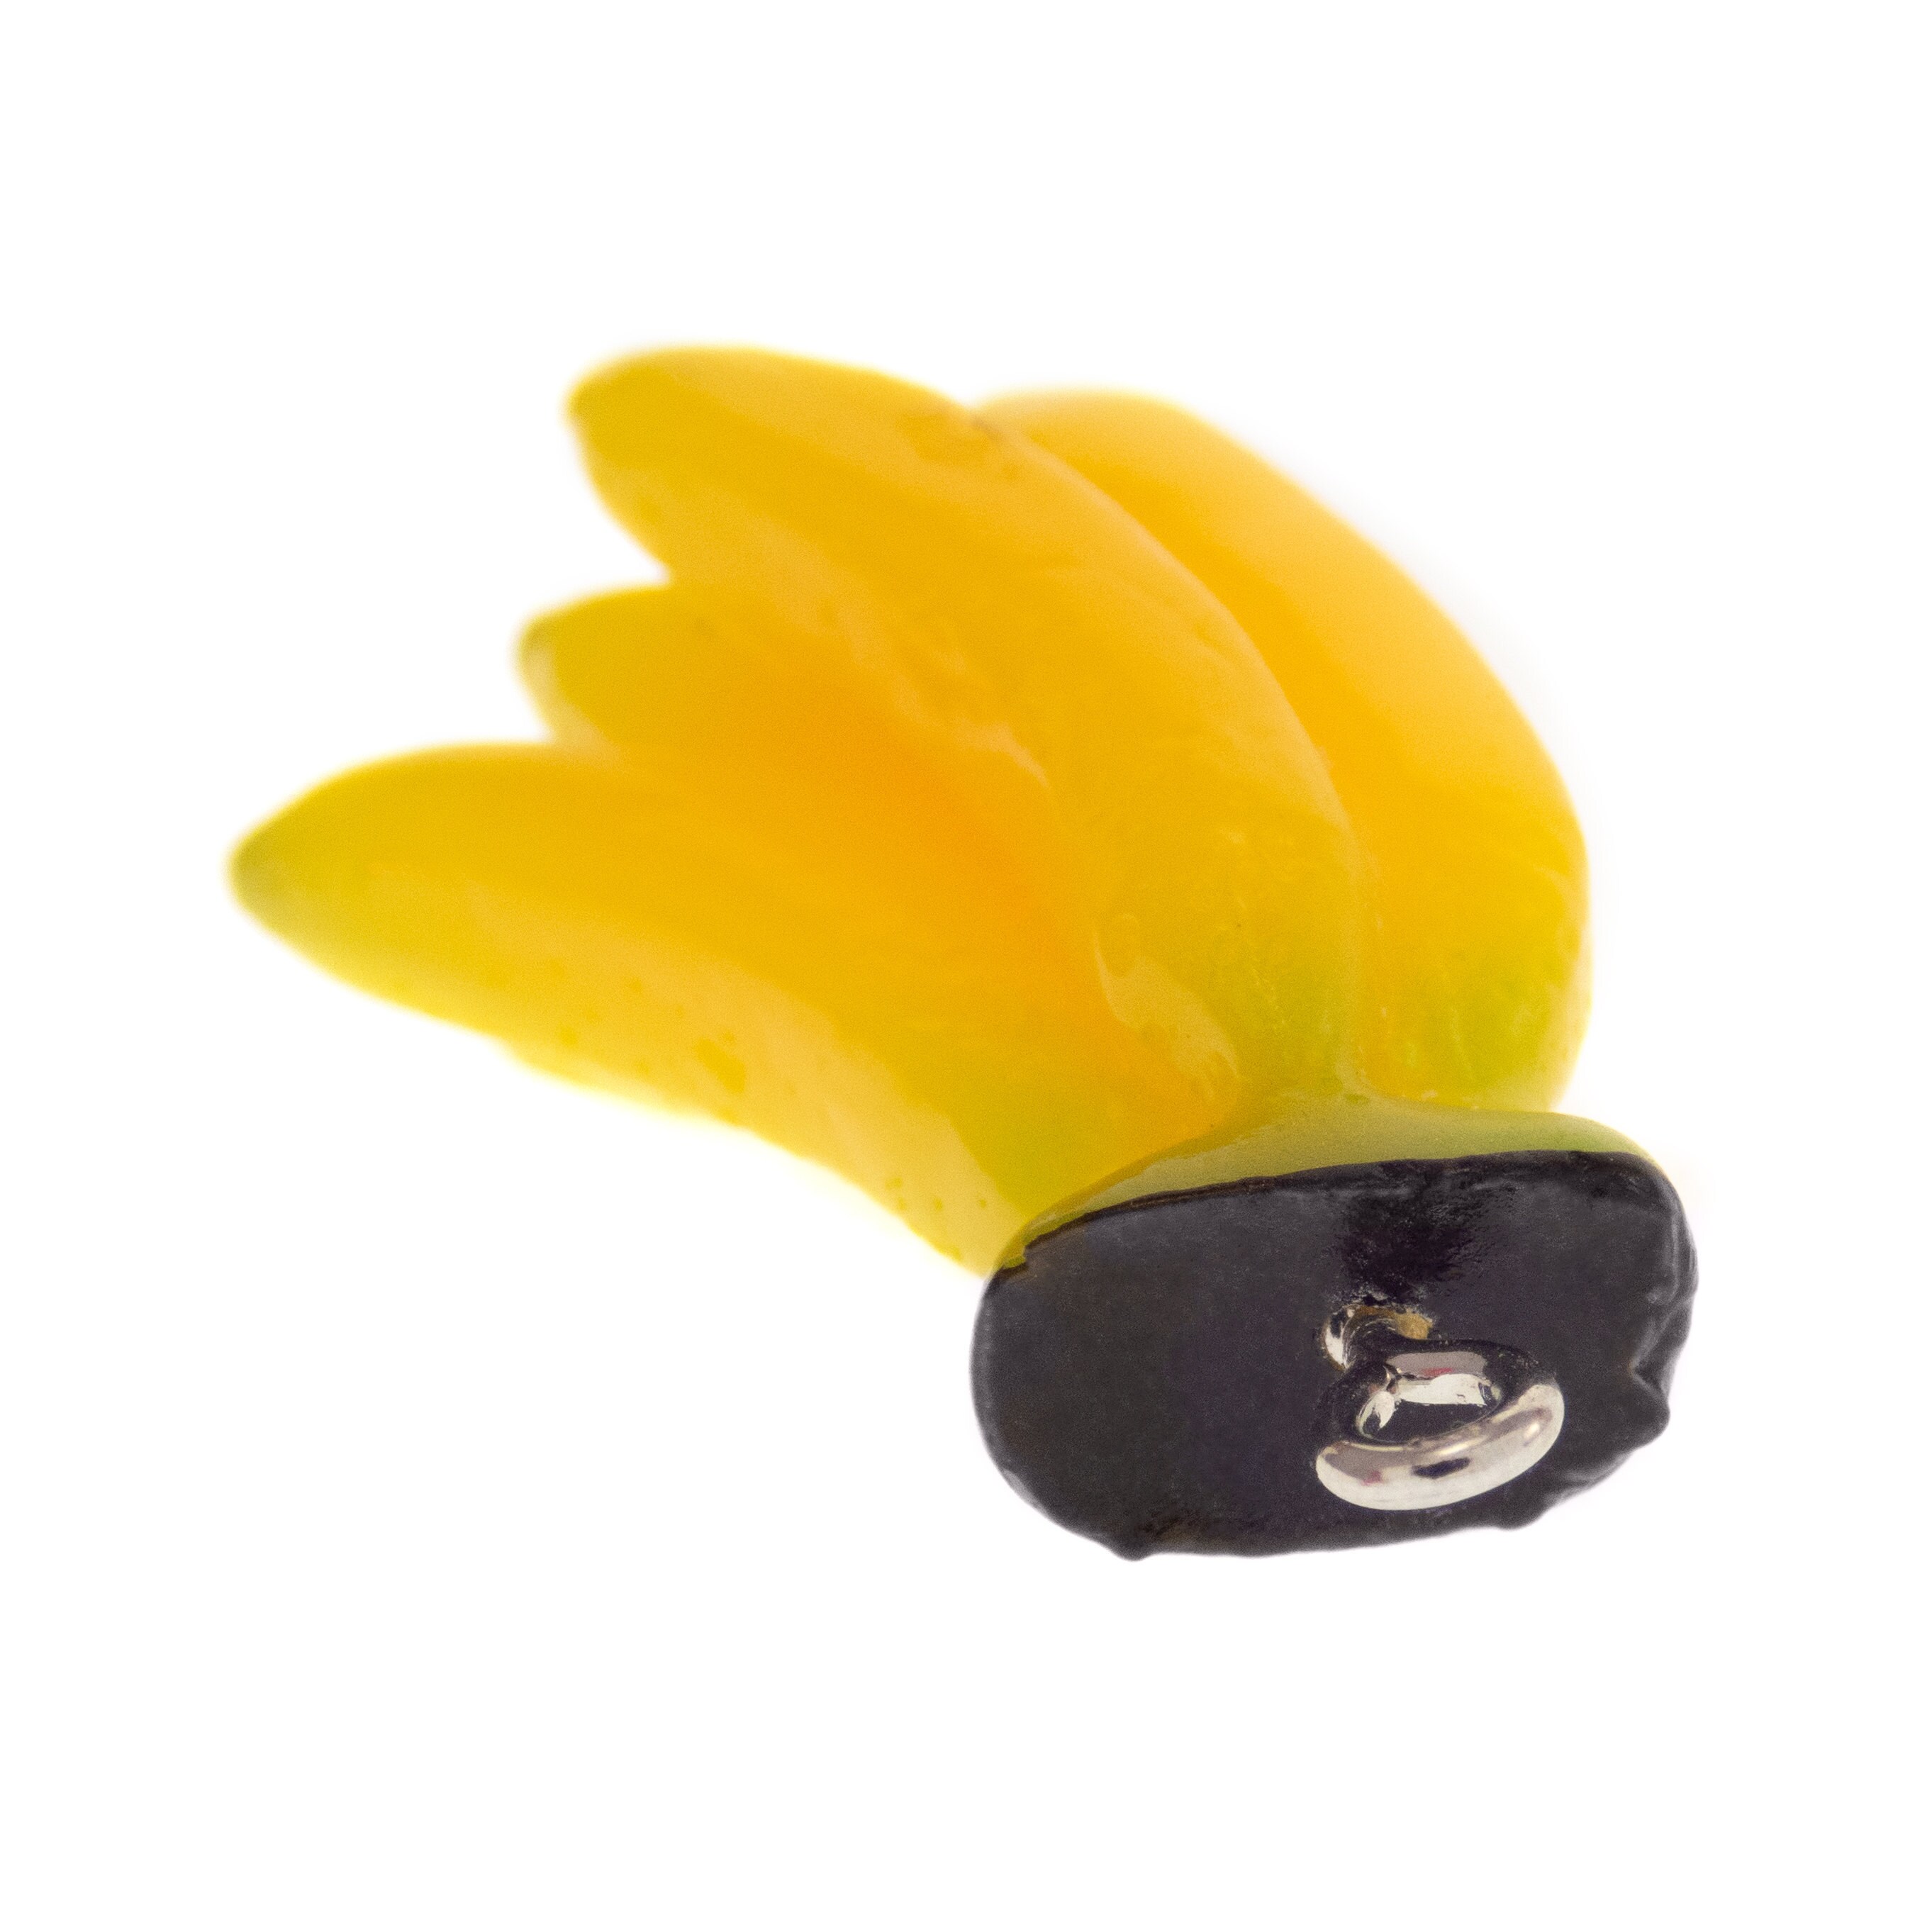 Banana Fruit Earrings Yellow. Cute Novelty Dangle Earrings